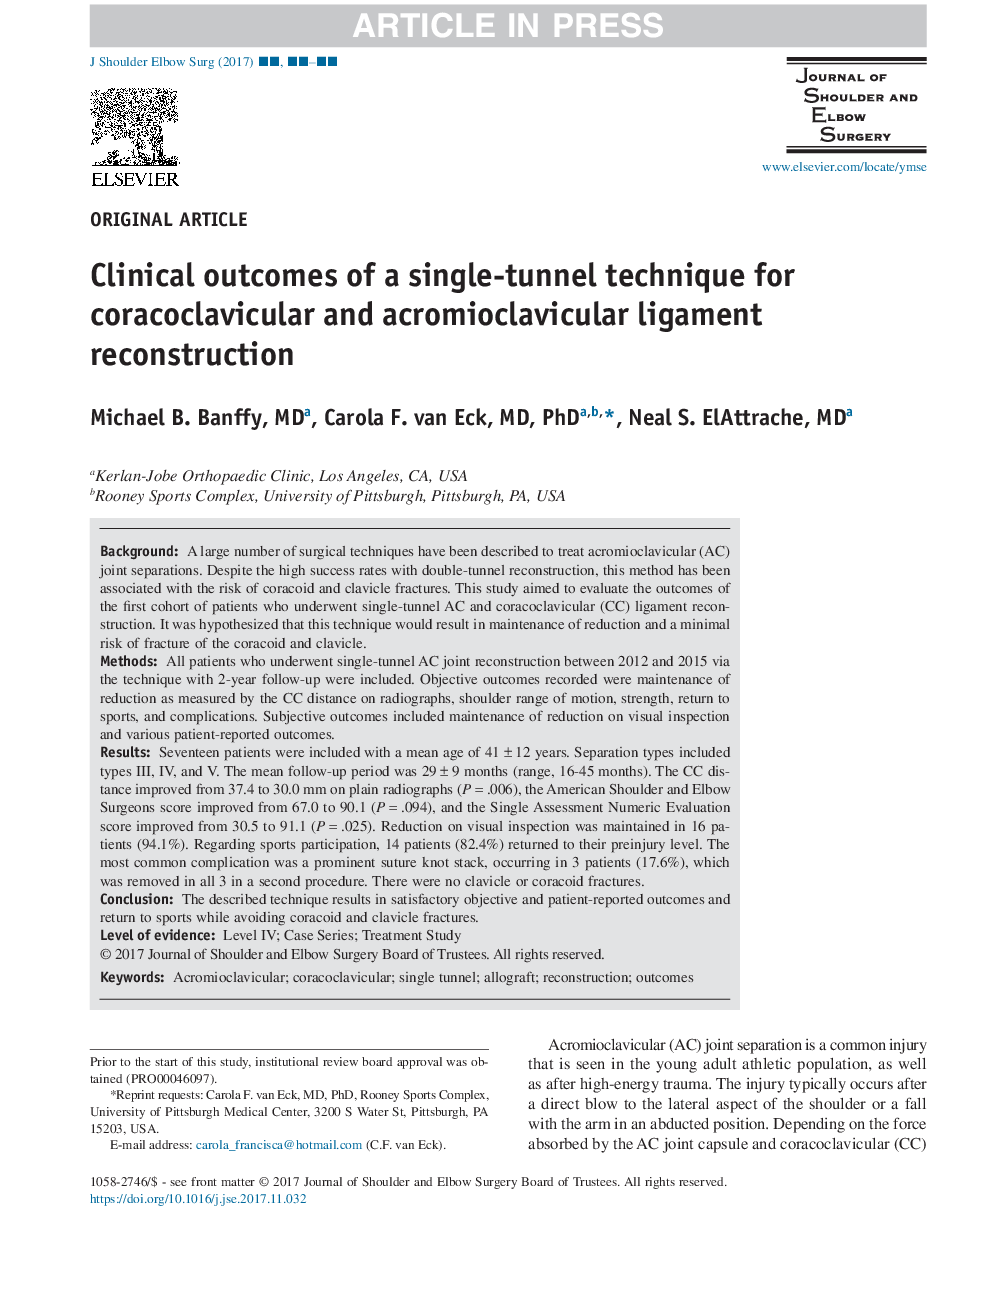 نتایج کلینیکی تکنیک تک تونل برای بازسازی لثه های کوراکوکلایکولار و آکرومیوکلوویکولر 